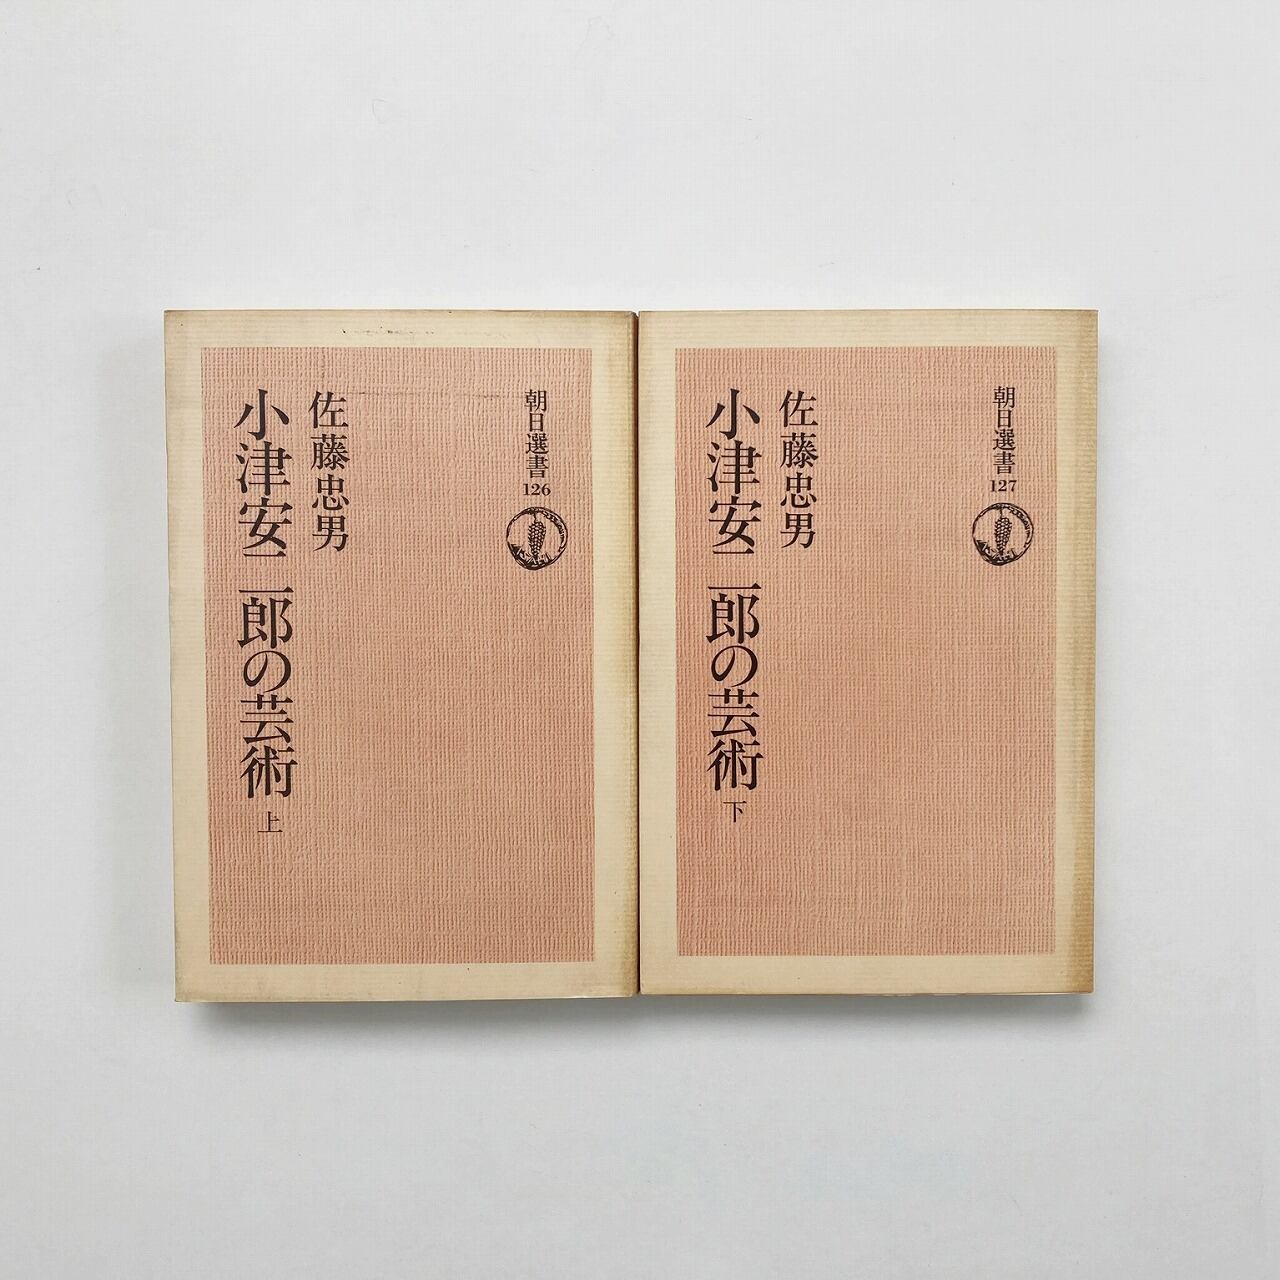 小津安二郎の芸術 上下巻 2冊セット <朝日選書126・127>